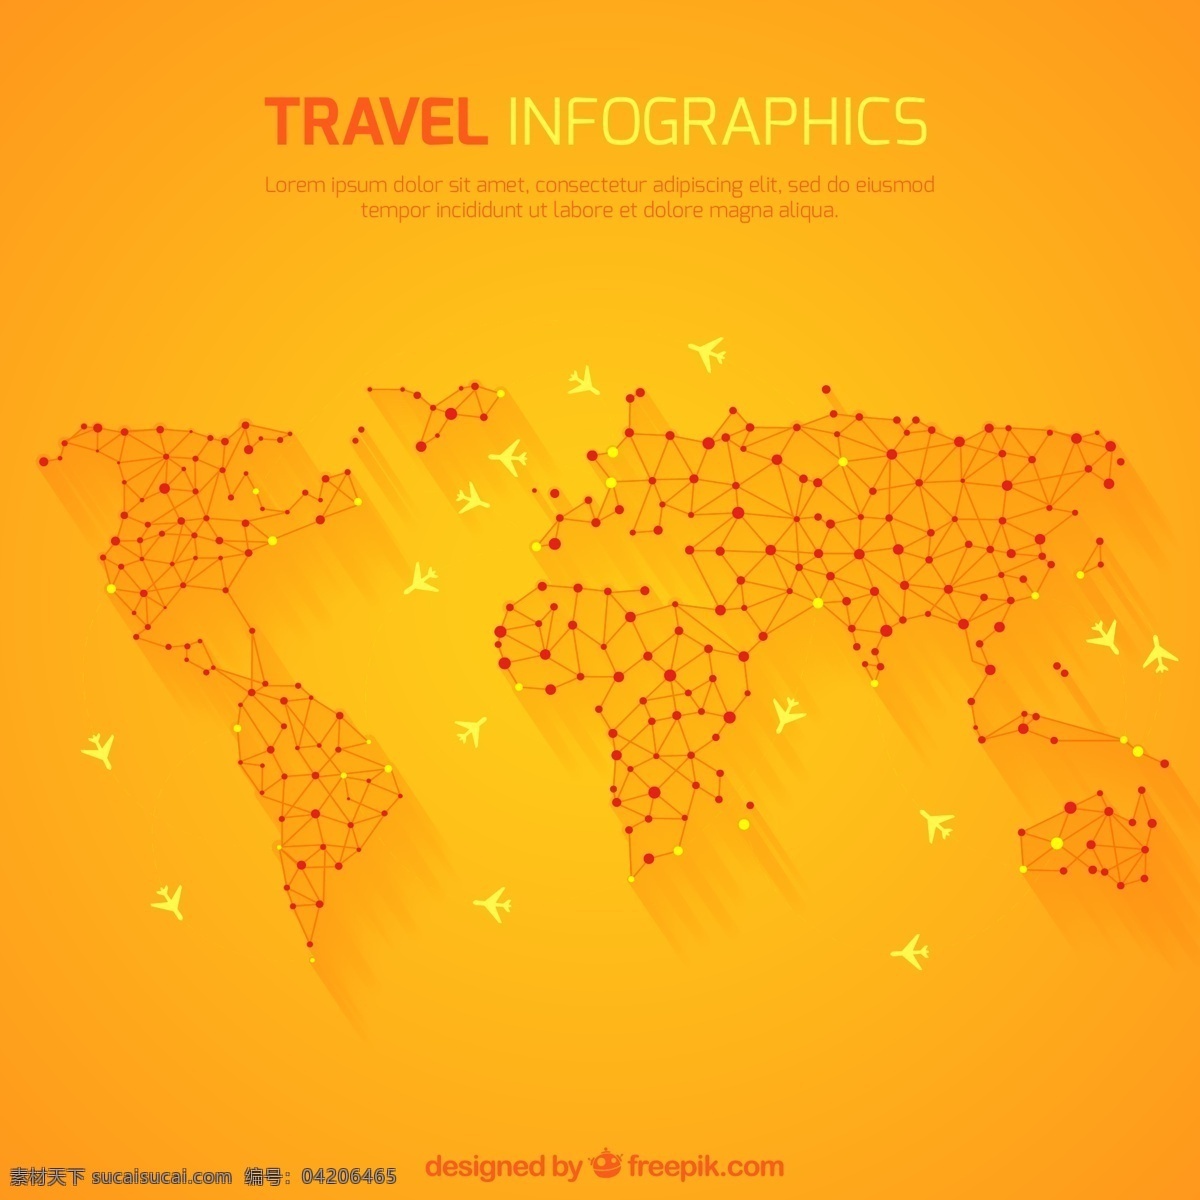 橙色 世界 旅行 地图 矢量 航线 环球 飞机 轨迹 信息图 矢量图